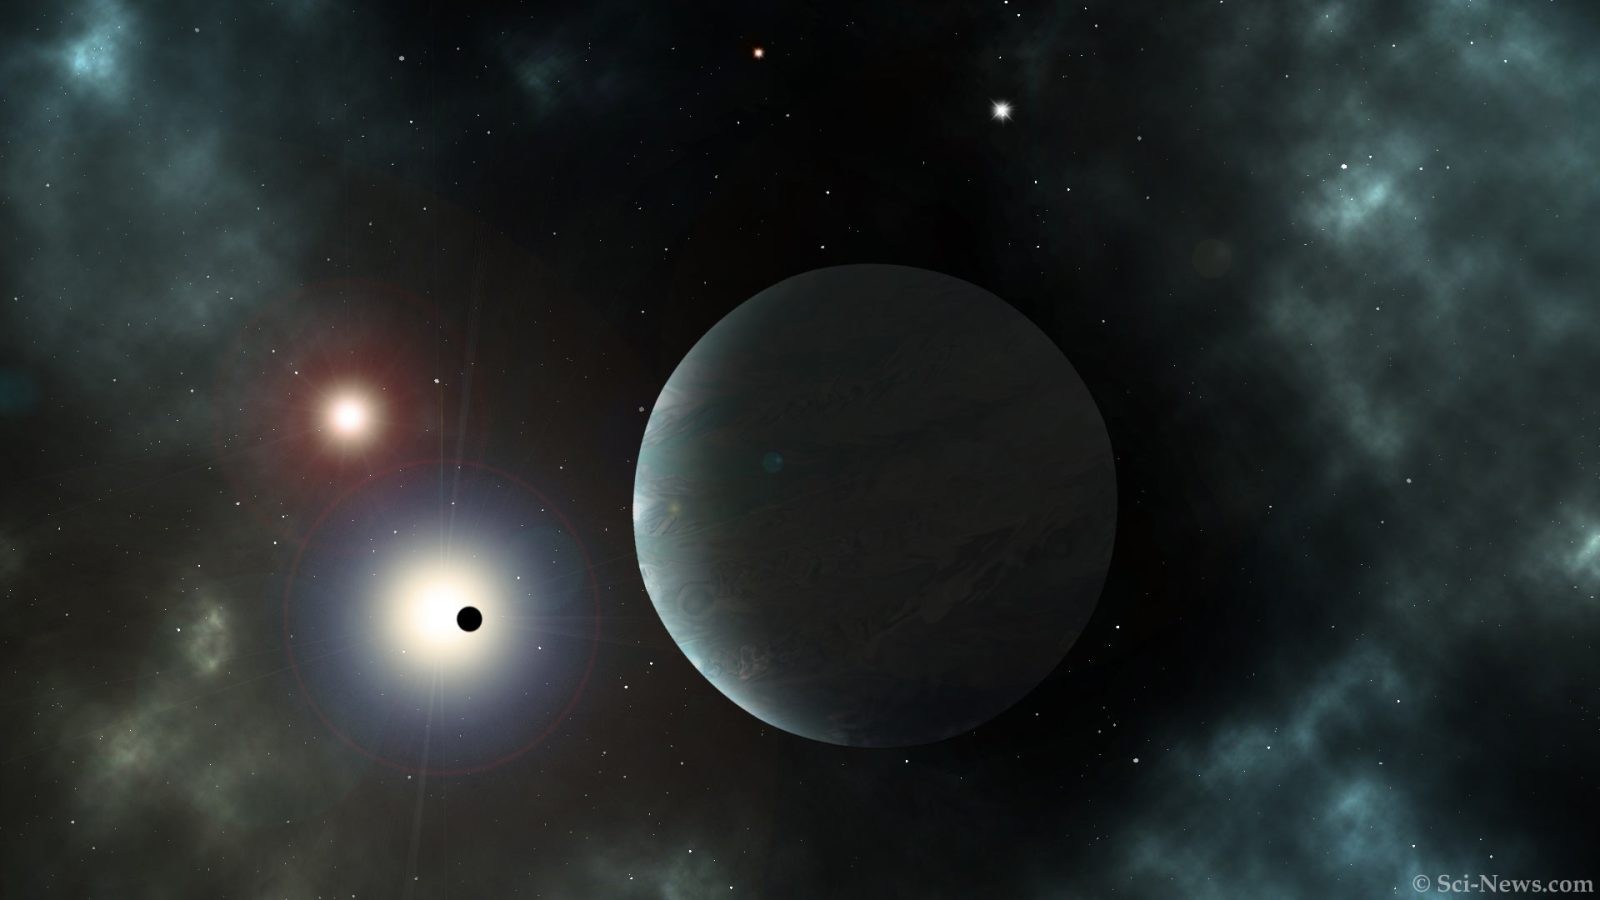 Skąd się mogą brać podwójne swobodne egzoplanety? Takie obiekty nie powinny w ogóle istnieć